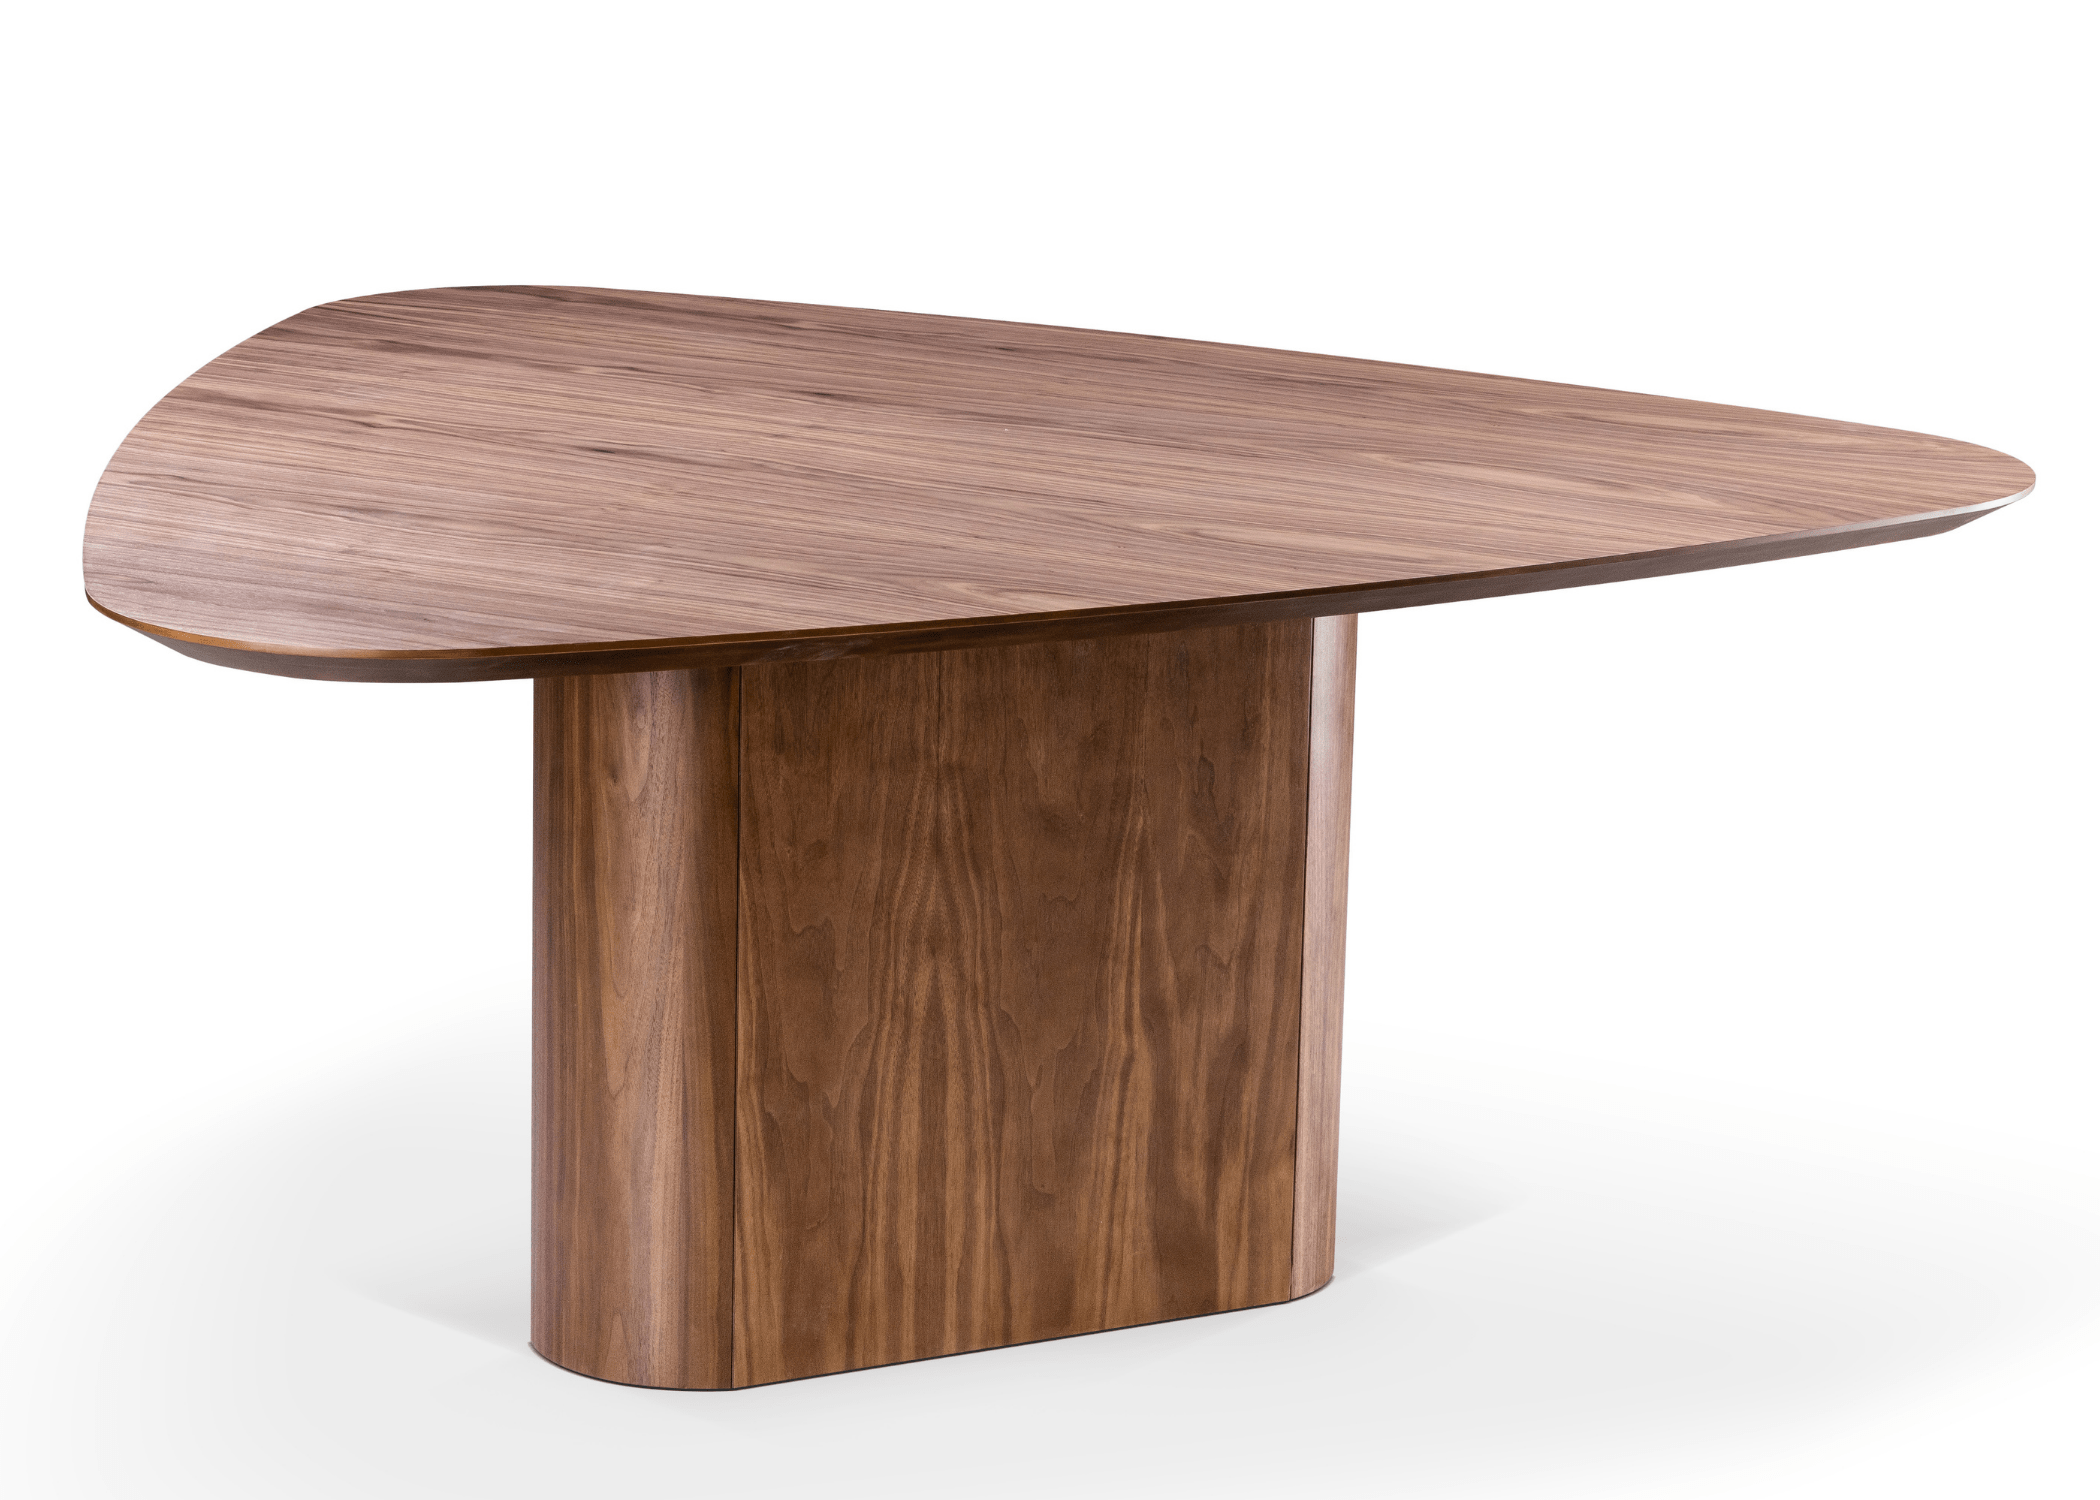 Tampo triangular da mesa de jantar Simples em lâmina de madeira, realçando a forma geométrica única e contemporânea.